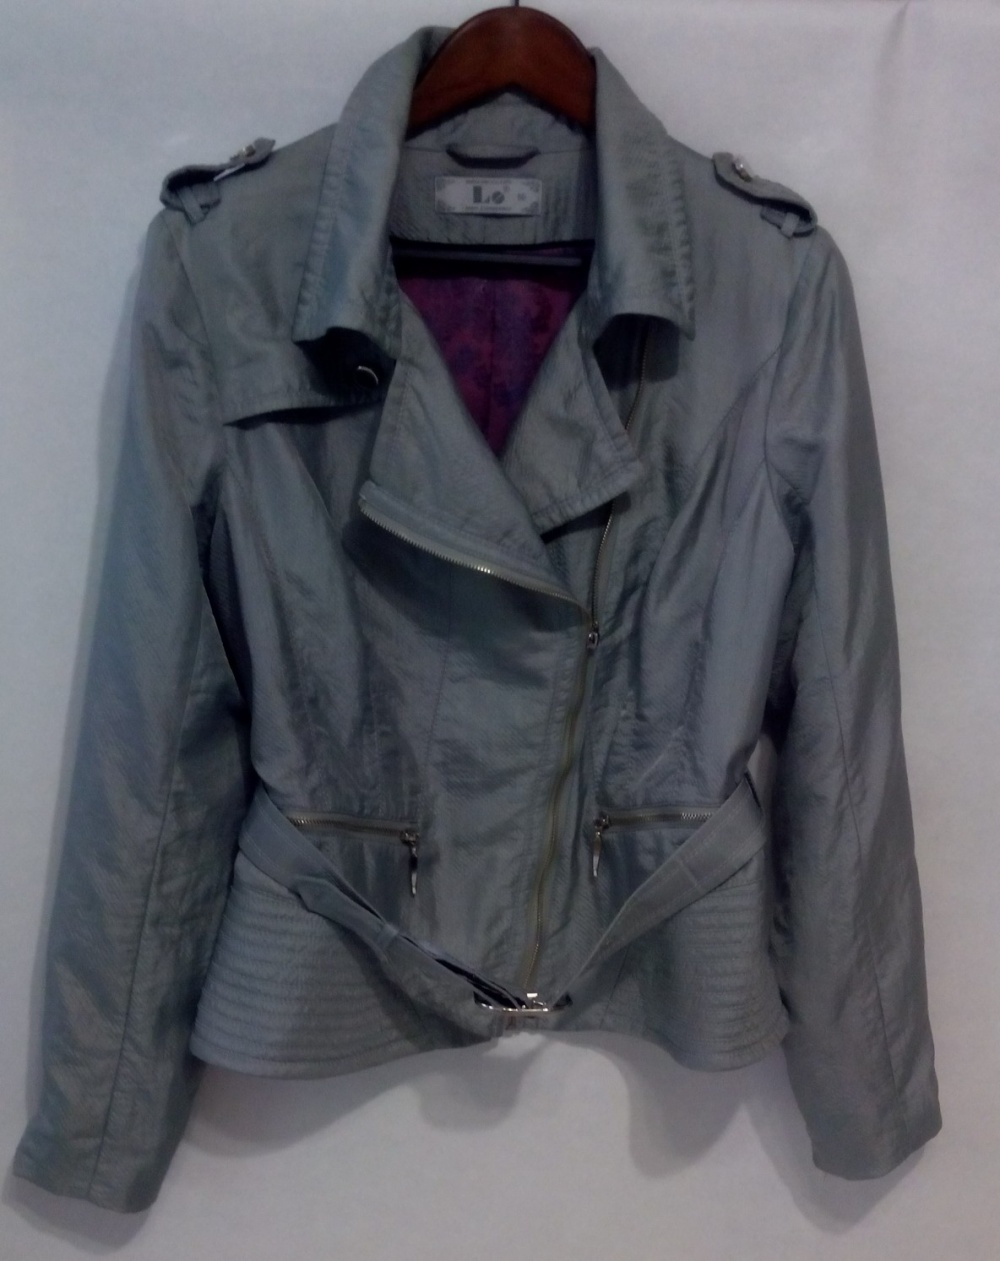 Куртка косуха ветровка  LO@JN 48-50 размер   L  XL цвет стальной серый